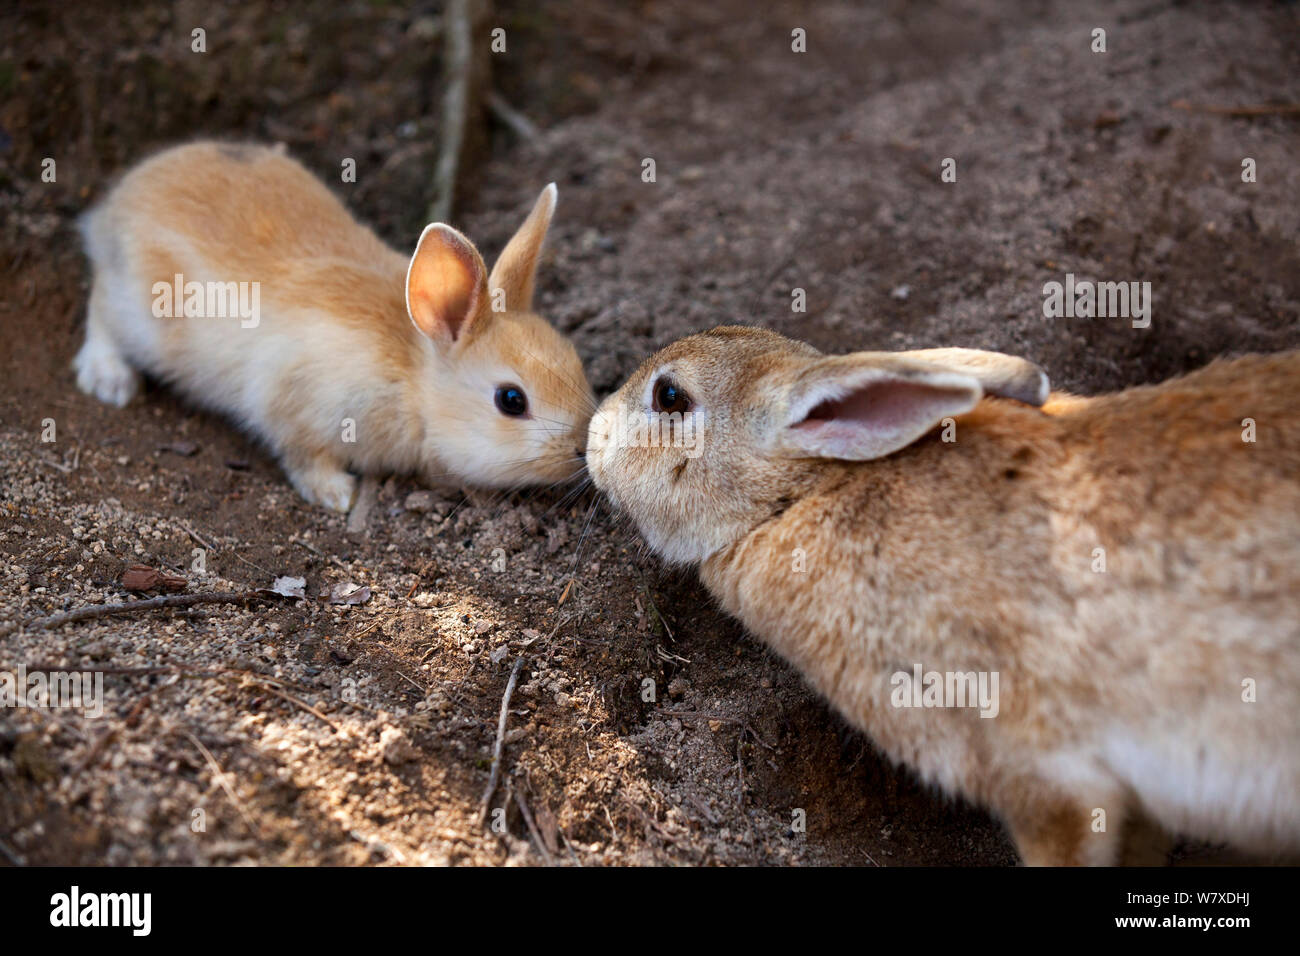 Les sauvages lapin (Oryctolagus cuniculus) la mère et l'enfant, nez à nez Okunojima Island, également connu sous le nom de Rabbit Island, Hiroshima, Japon. Banque D'Images